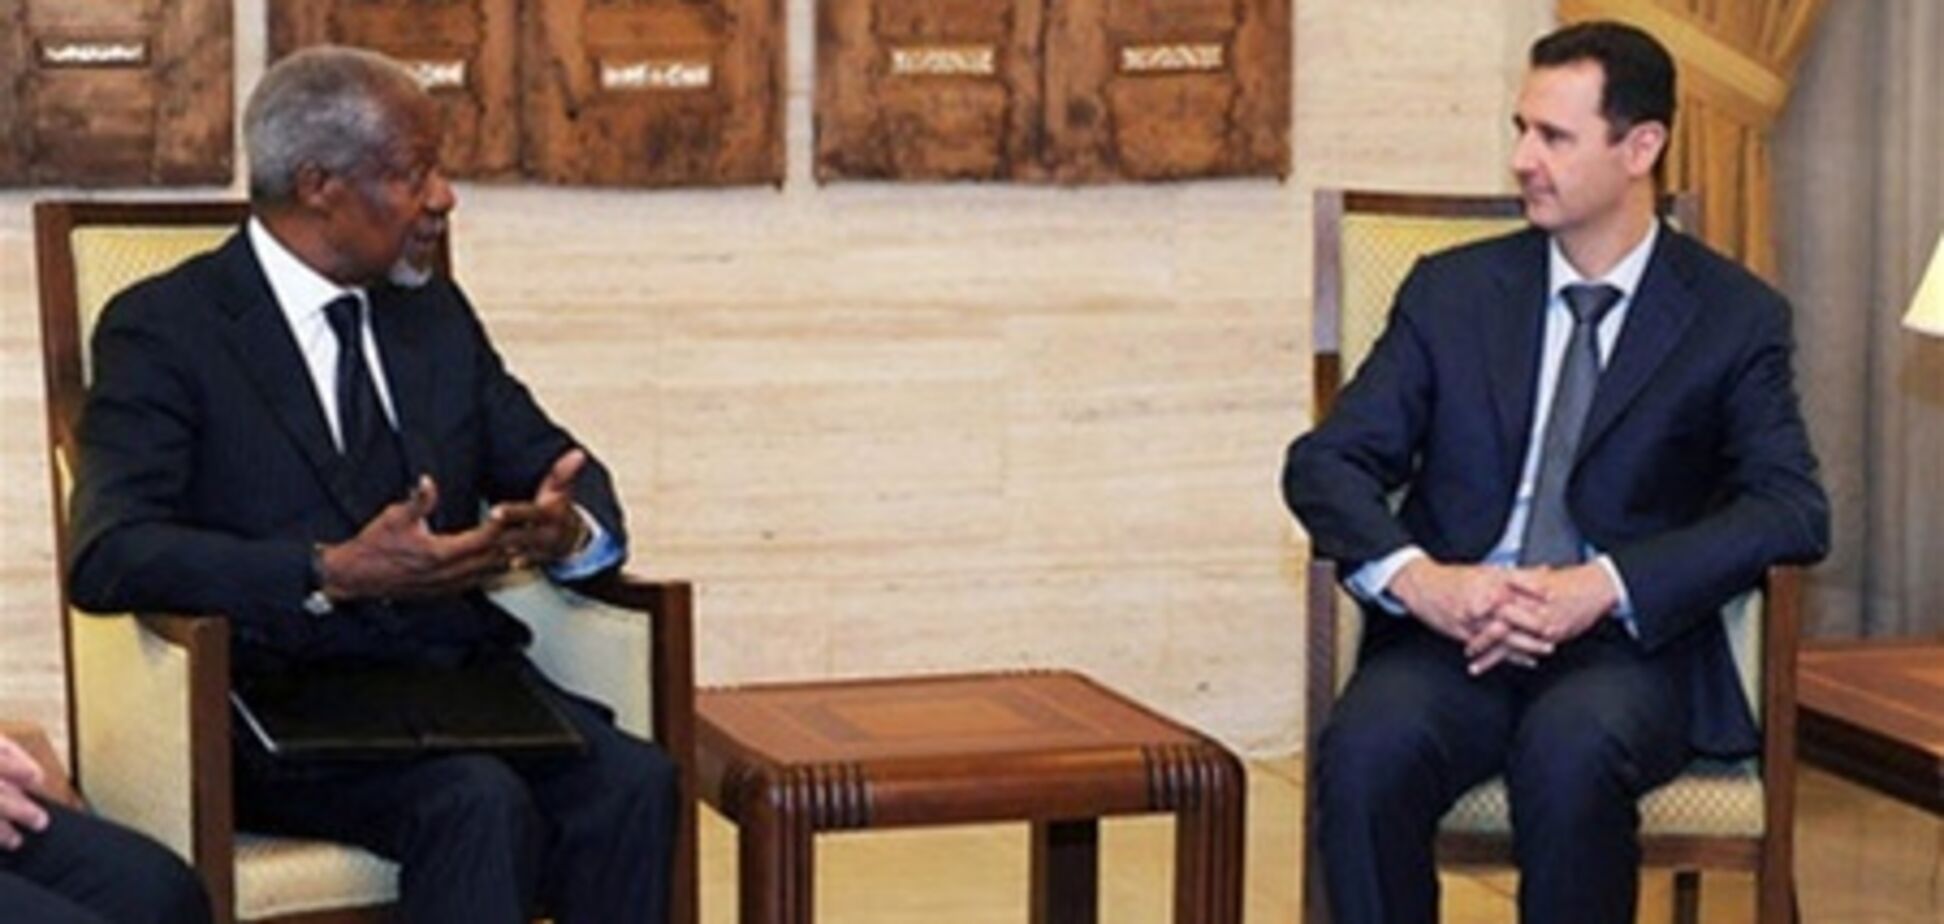 Аннан провел 'конструктивные переговоры' с Асадом